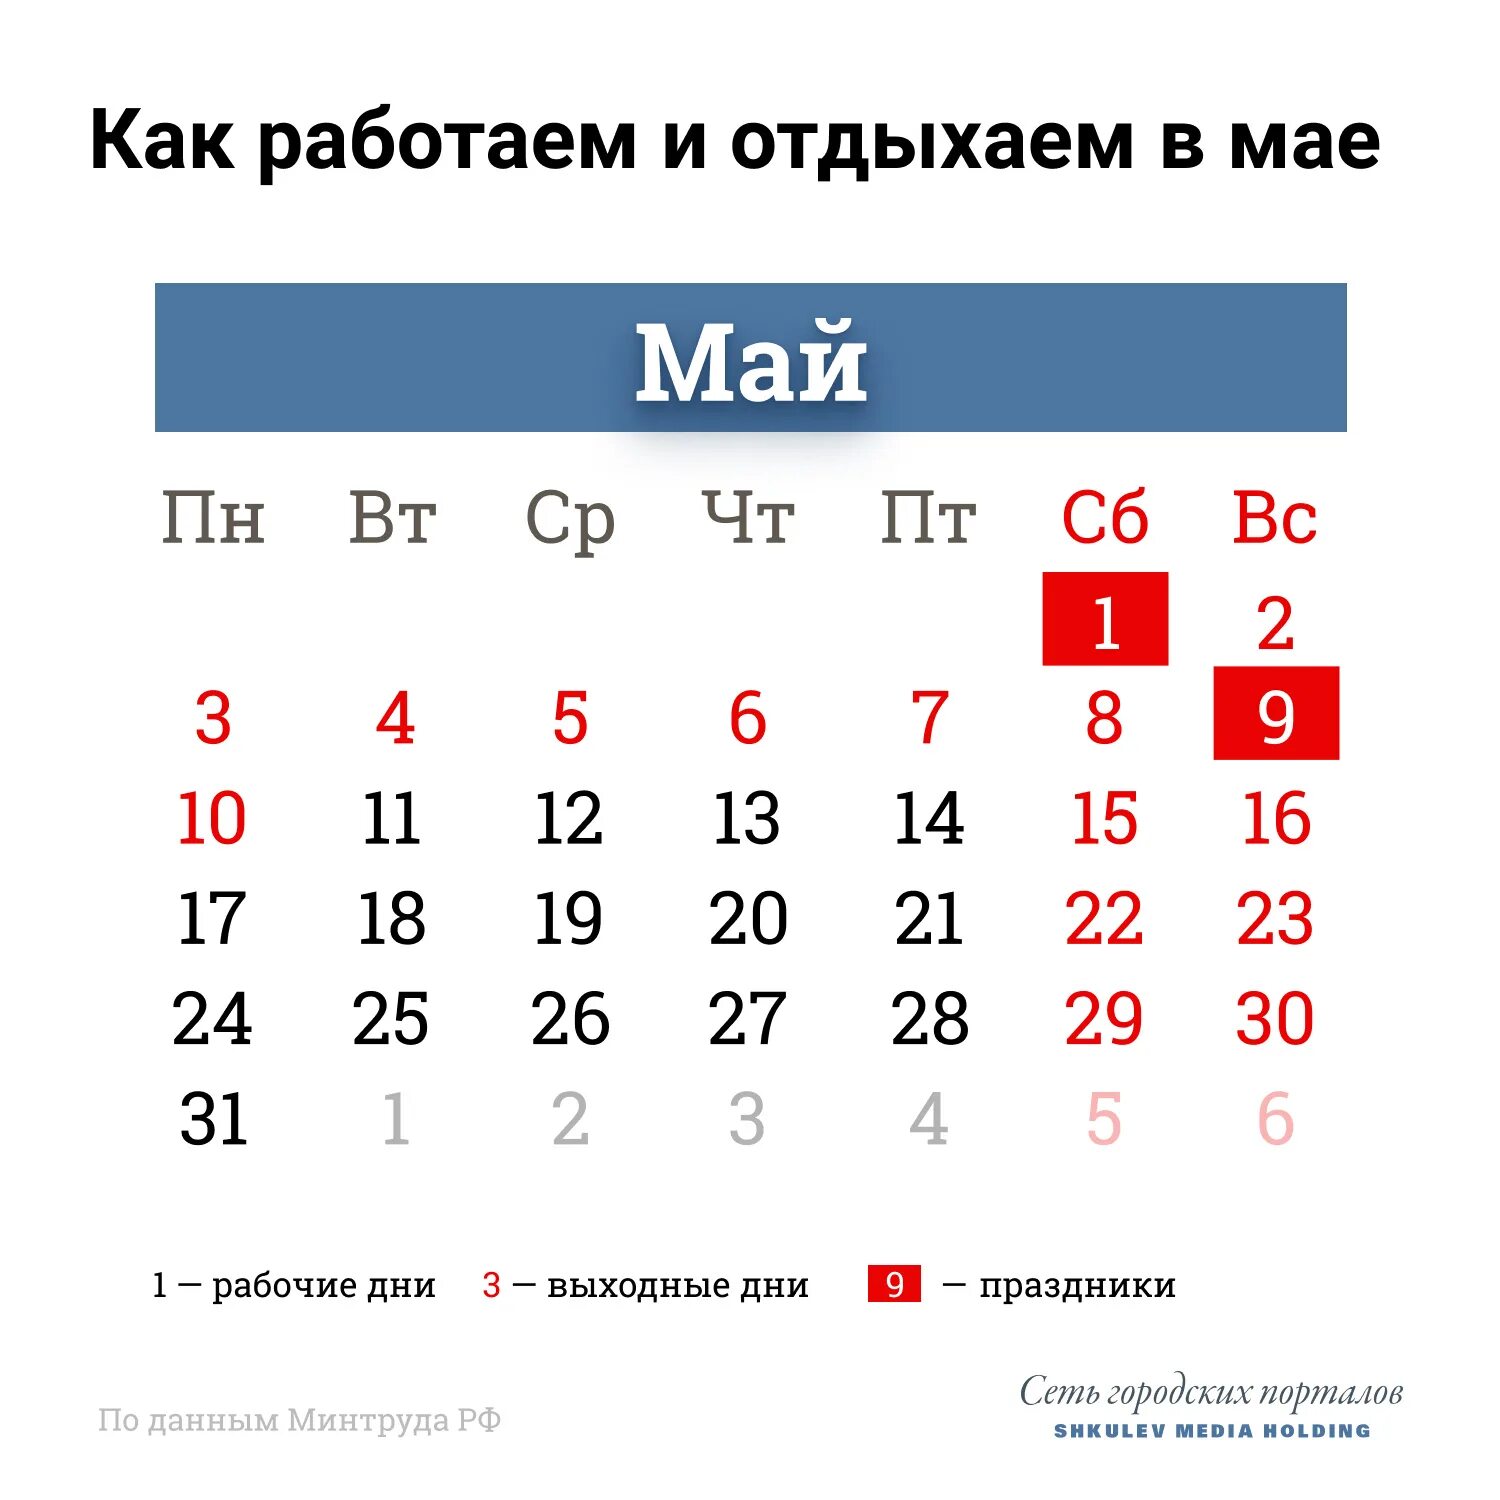 27 мая выходной. Праздничные дни в мае 2021 года в России. Выходные в мае. Майсеип праздник календарь. Майские праздники rfktylfh,.